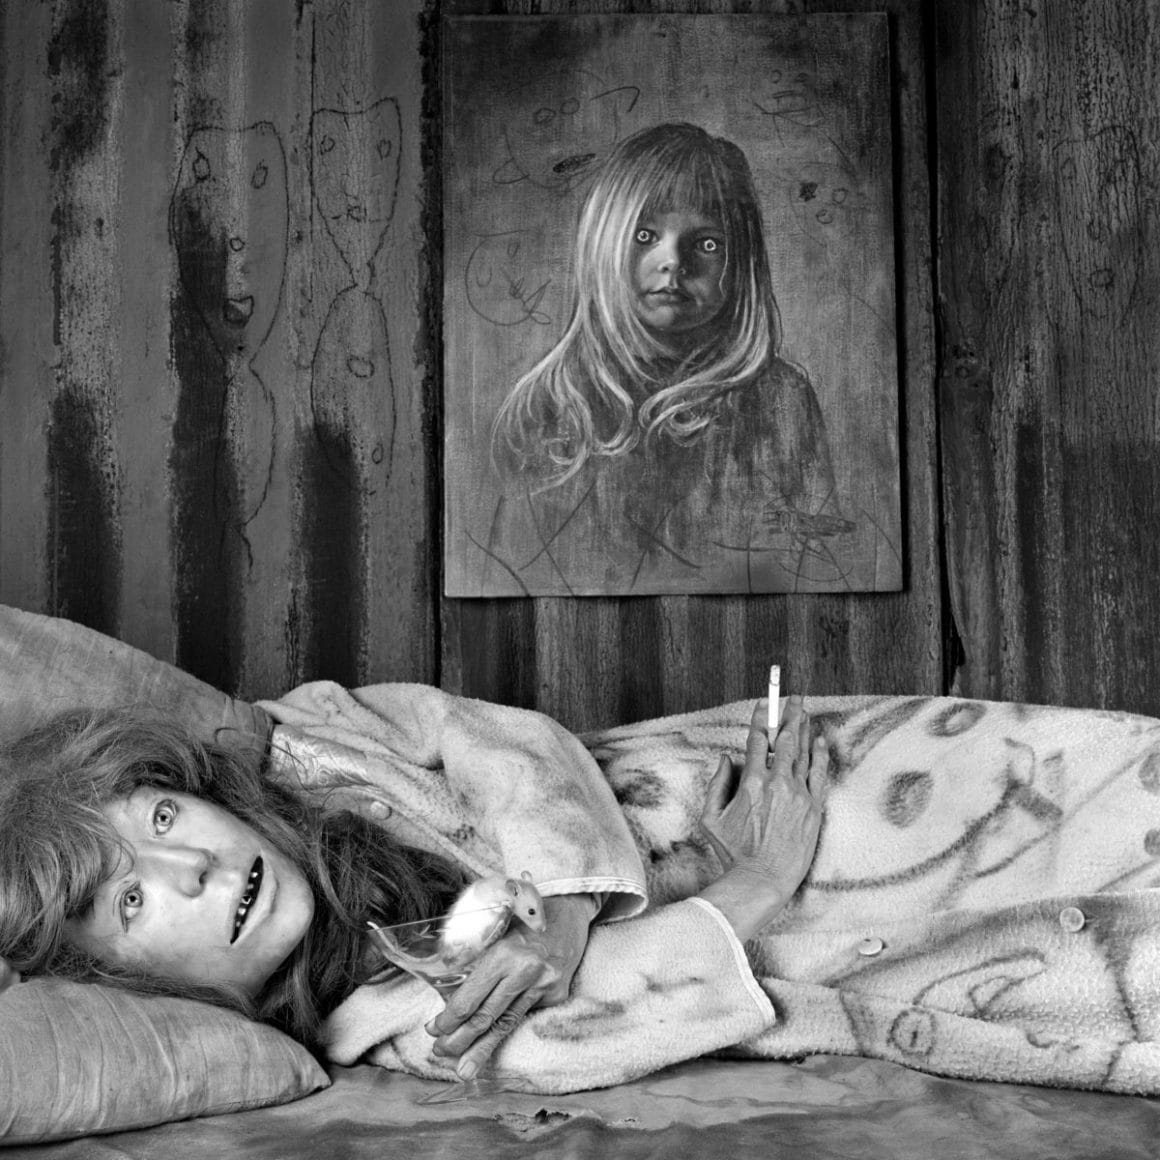 Une femme inquiétante couchée sous un portrait inquiétant. 